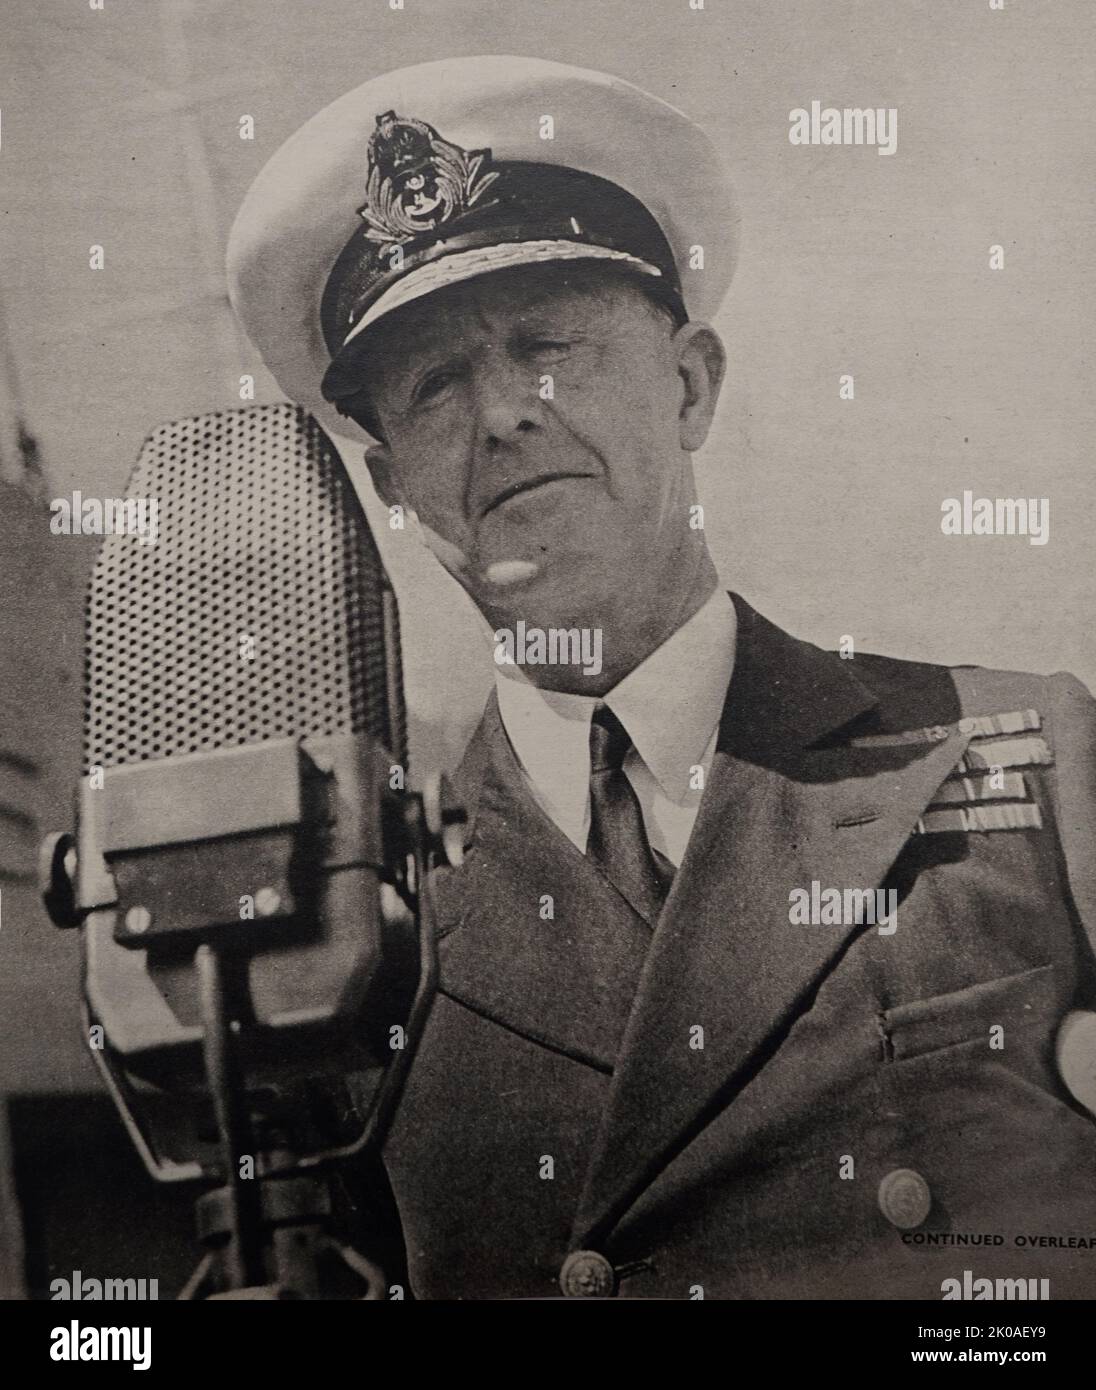 Admiral der Flotte Andrew Browne Cunningham, 1. Viscount Cunningham aus Hyndhope (7. Januar 1883 - 12. Juni 1963) war während des Zweiten Weltkriegs ein hoher Offizier der Royal Navy. Er war weithin bekannt durch seine Initialen, ABC Stockfoto